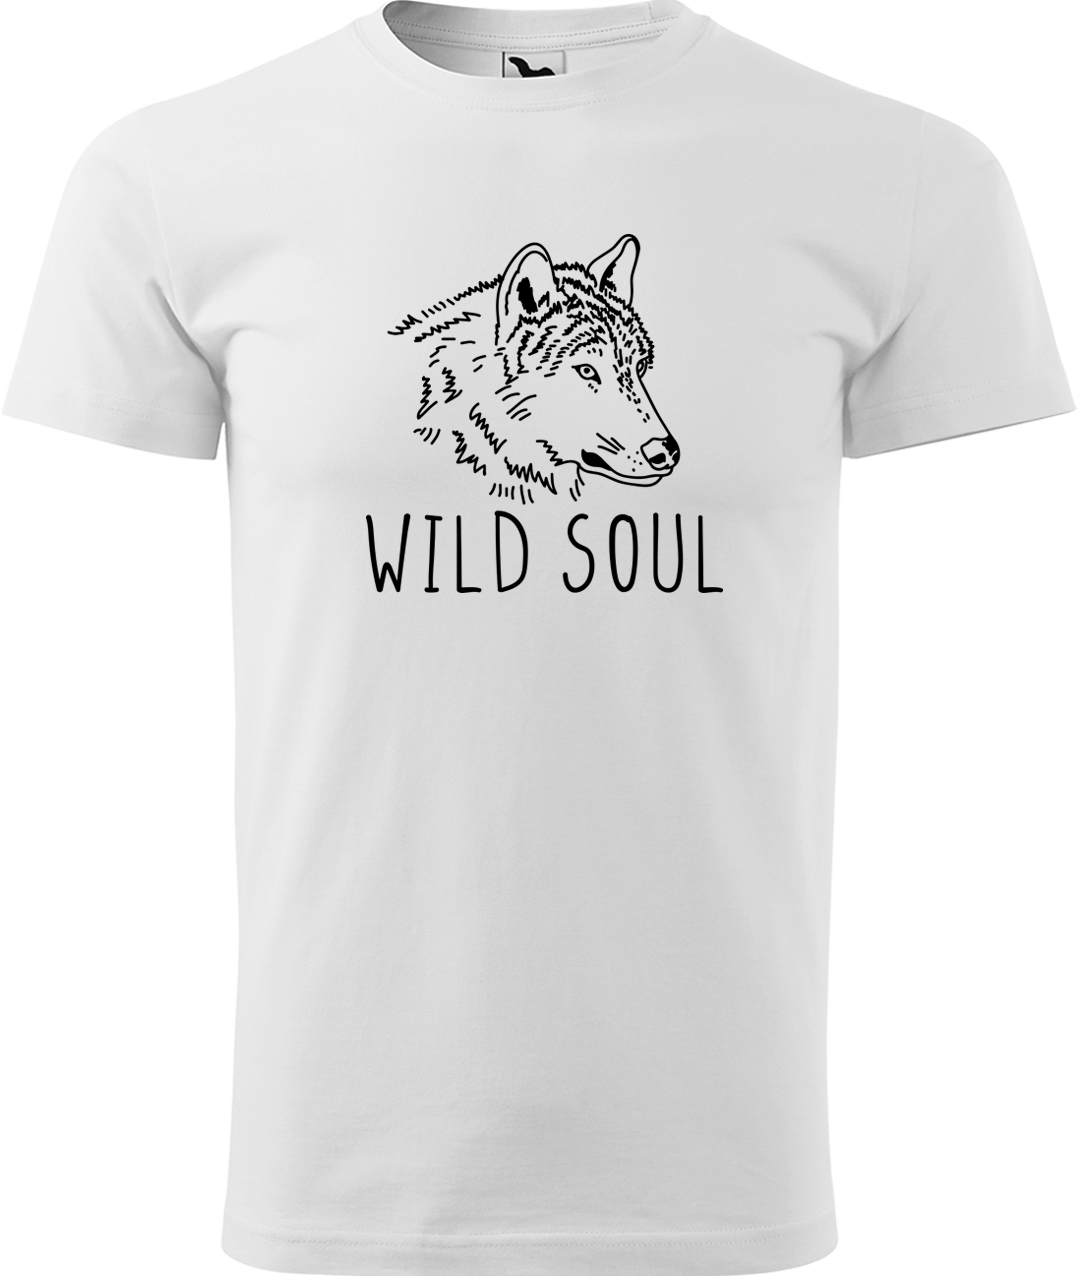 Pánské tričko s vlkem - Wild soul Velikost: S, Barva: Bílá (00), Střih: pánský